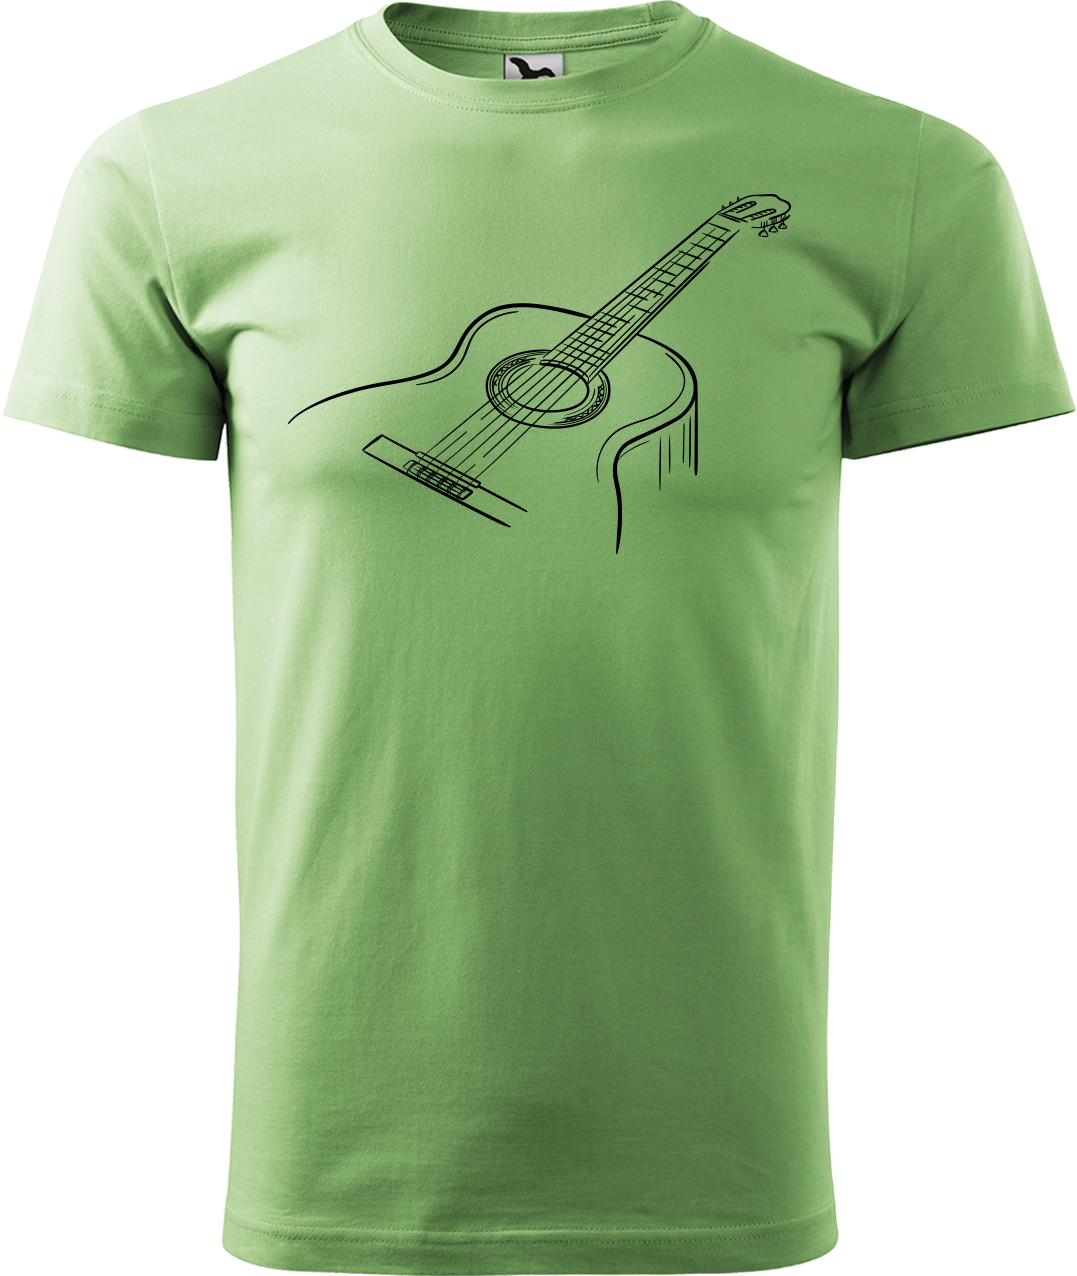 Pánské tričko s kytarou - Klasická kytara Velikost: XL, Barva: Trávově zelená (39)